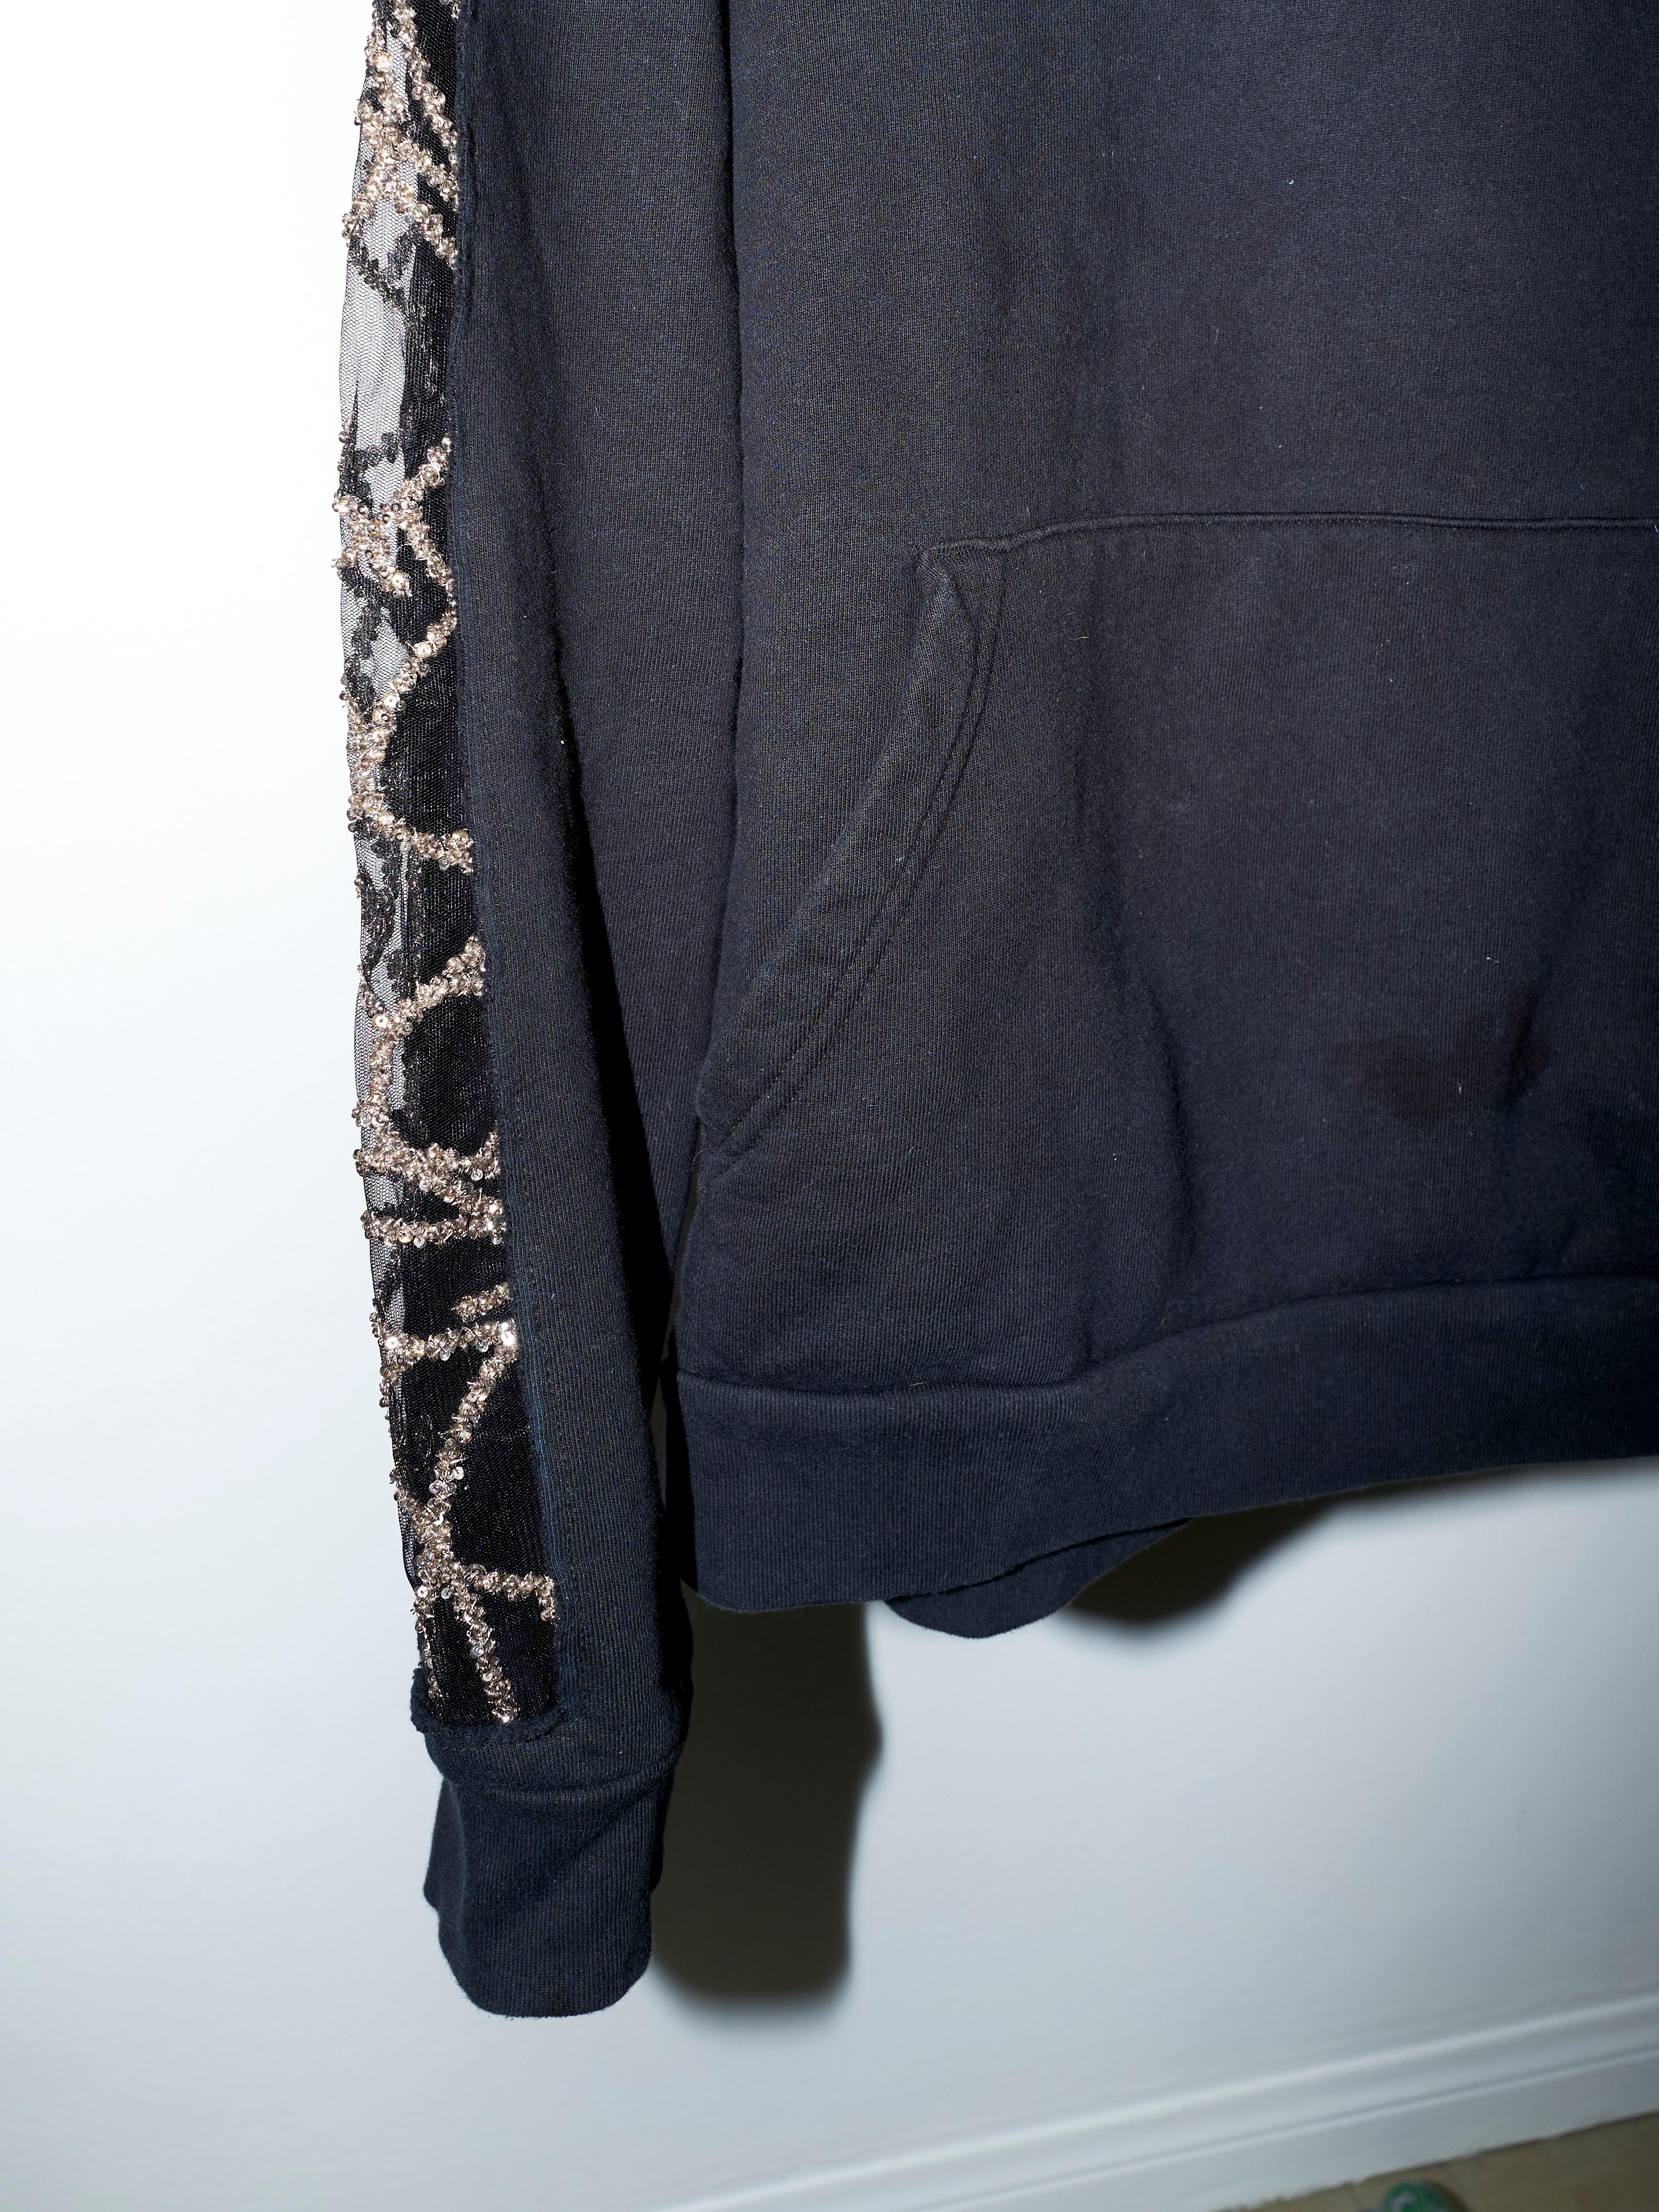 Black Hoodie Sweatshirt Transparent Sheer Mesh Chrystal Embroidery J Dauphin For Sale 5